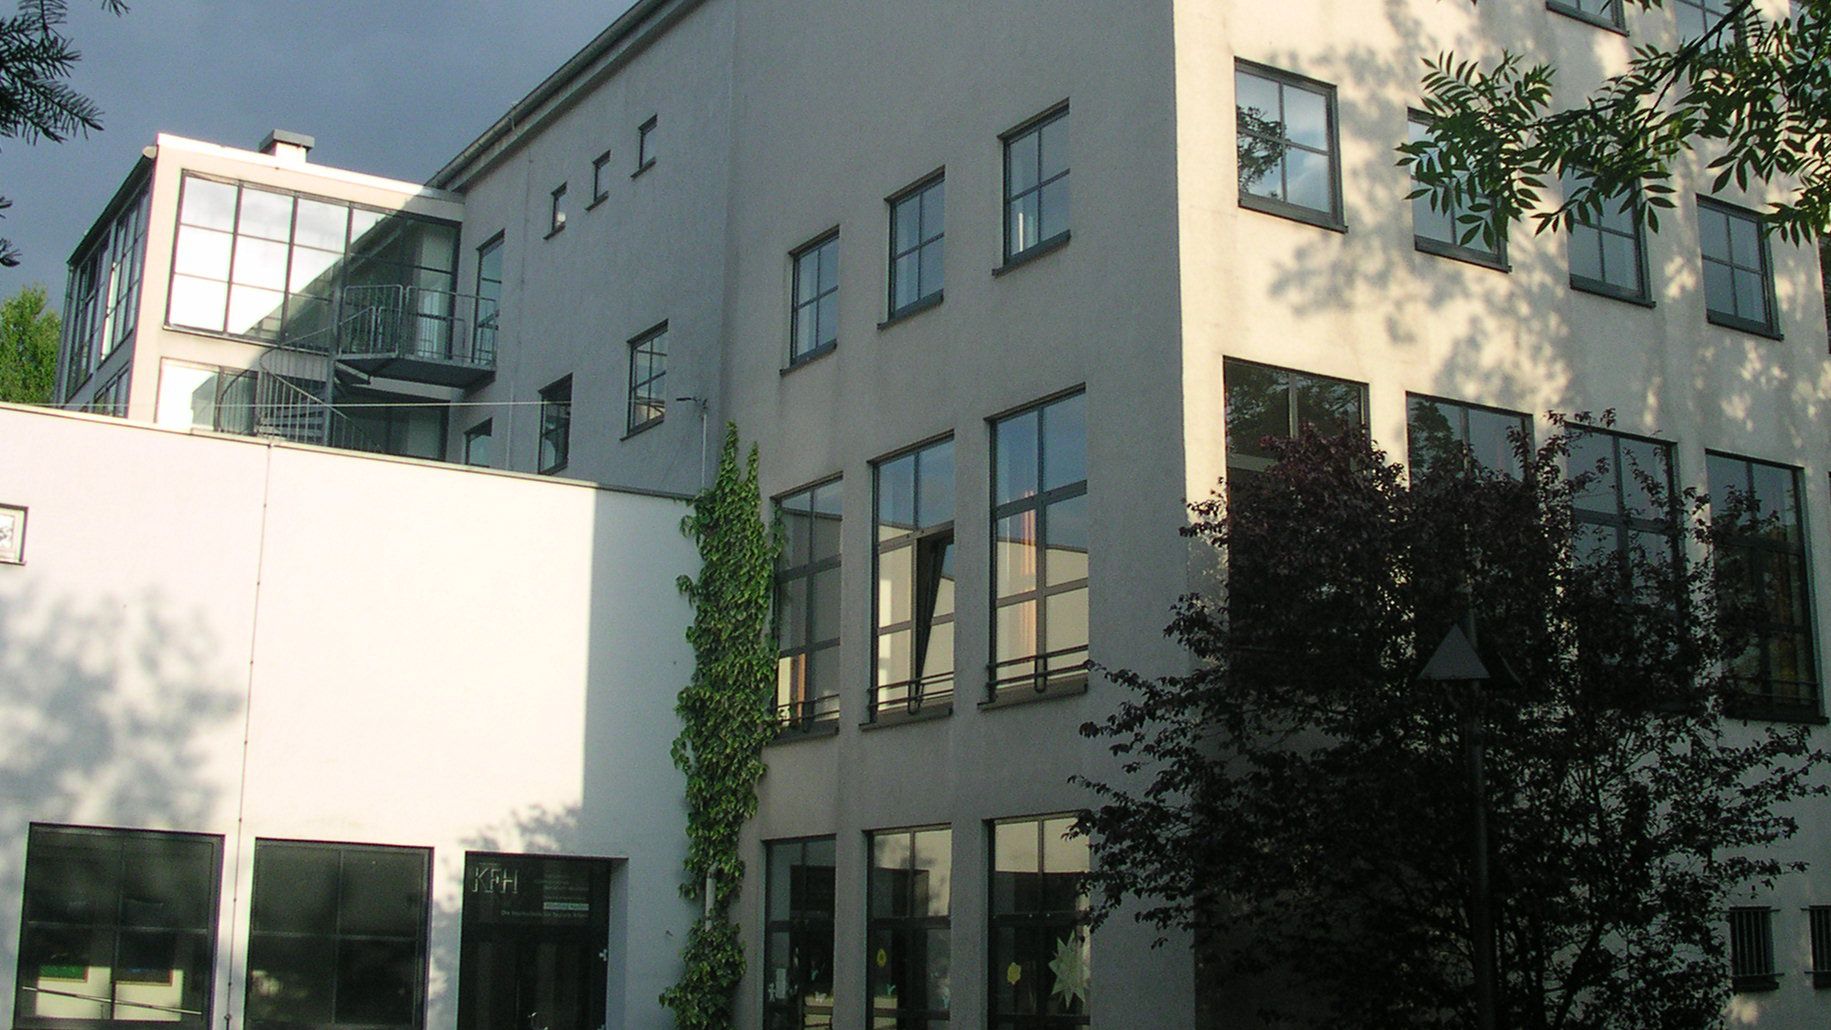 Seit 100 Jahren wird in Aachen Soziale Arbeit gelehrt, seit 1930 am Standort Robert-Schumann-Straße. (c) Norbert Schnitzler/wikimedia commons